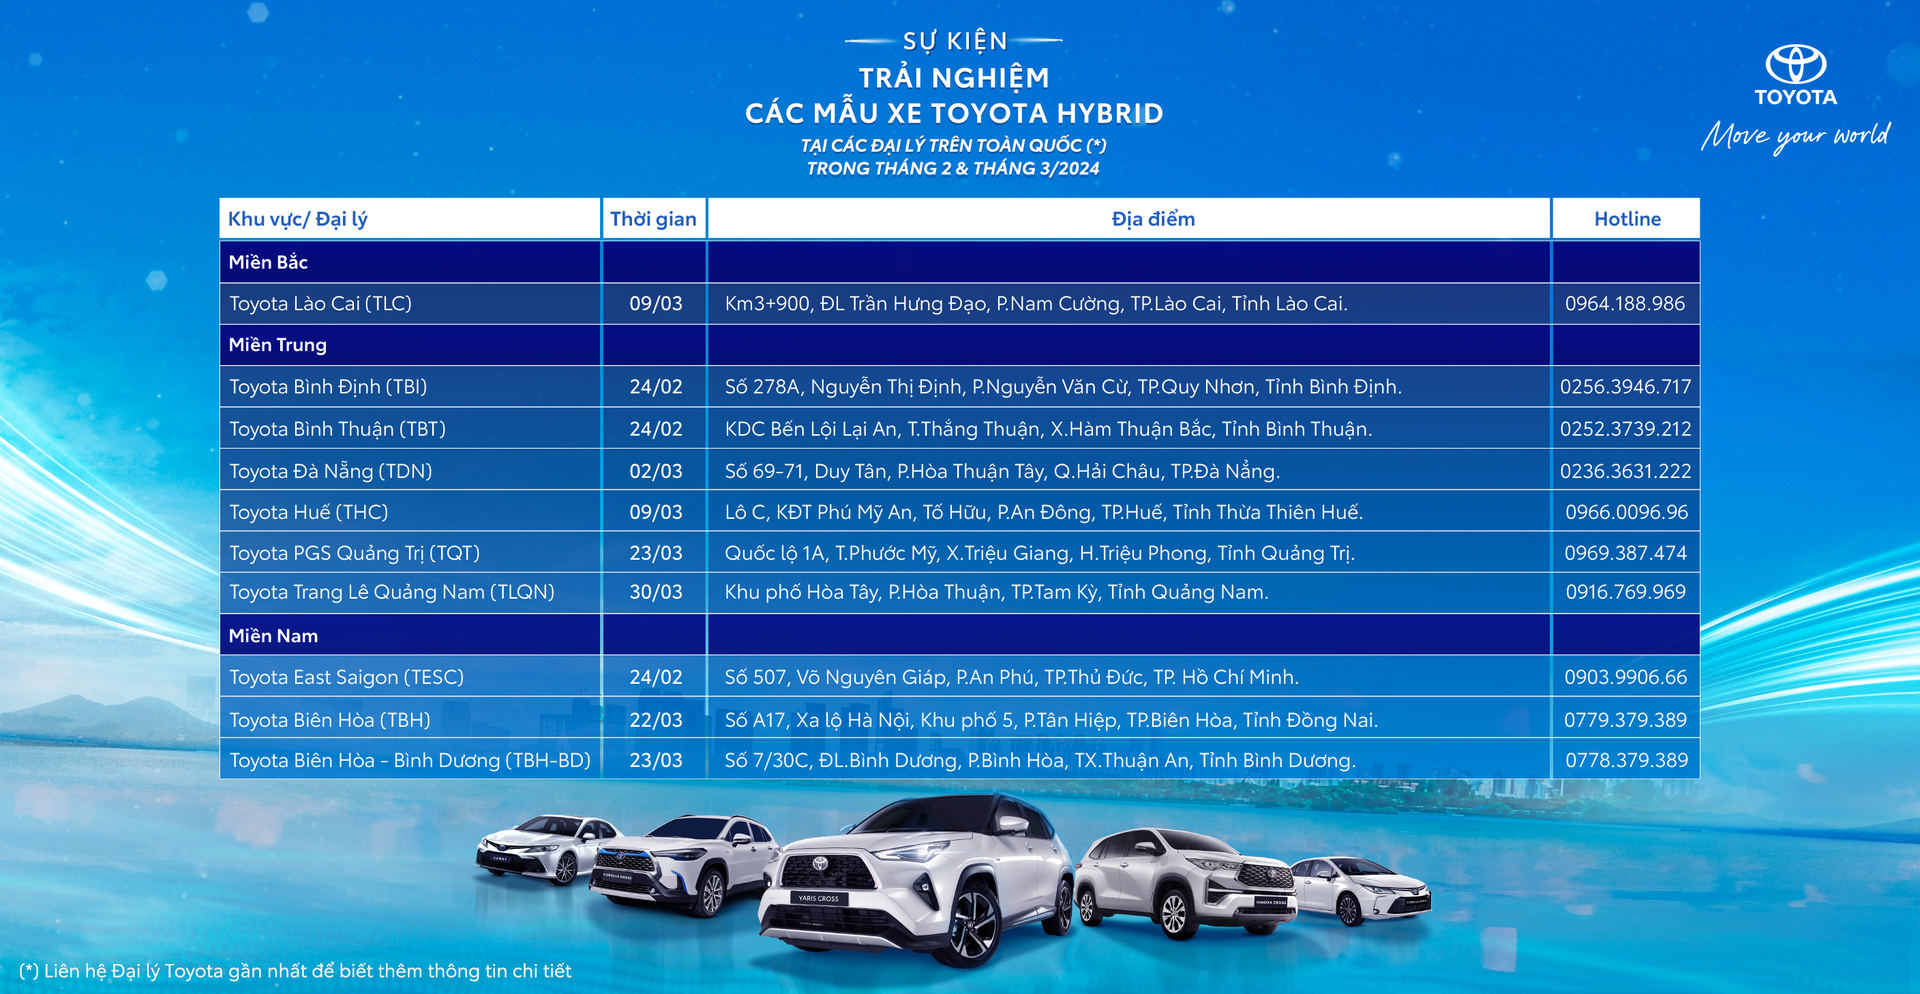 Chi tiết lịch trình sự kiện trải nghiệm Toyota Hybrid tháng 2 & 3.